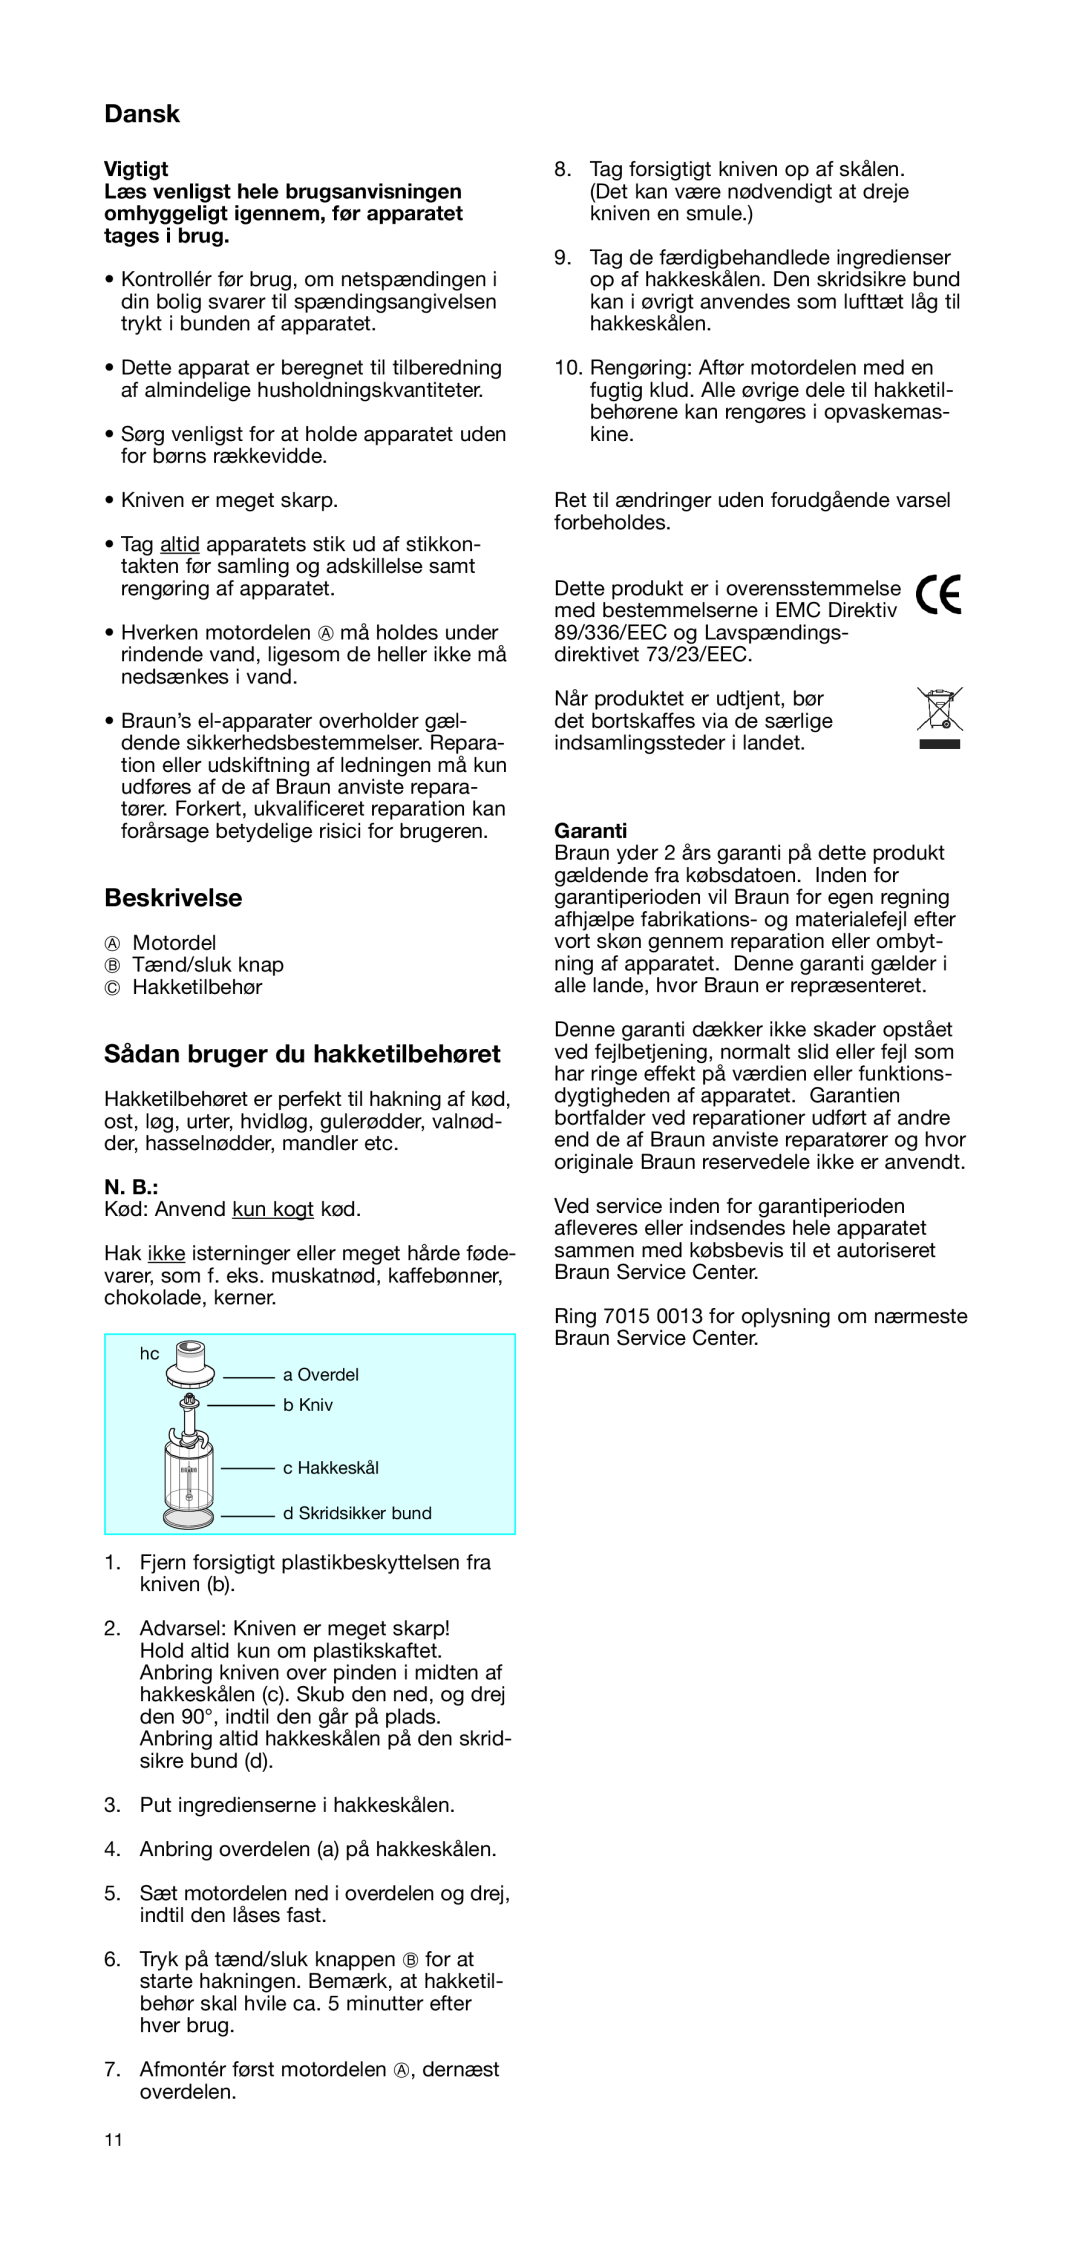 Braun CH 100 manual Dansk, Beskrivelse, Sådan bruger du hakketilbehøret, Vigtigt, N. B, Garanti 